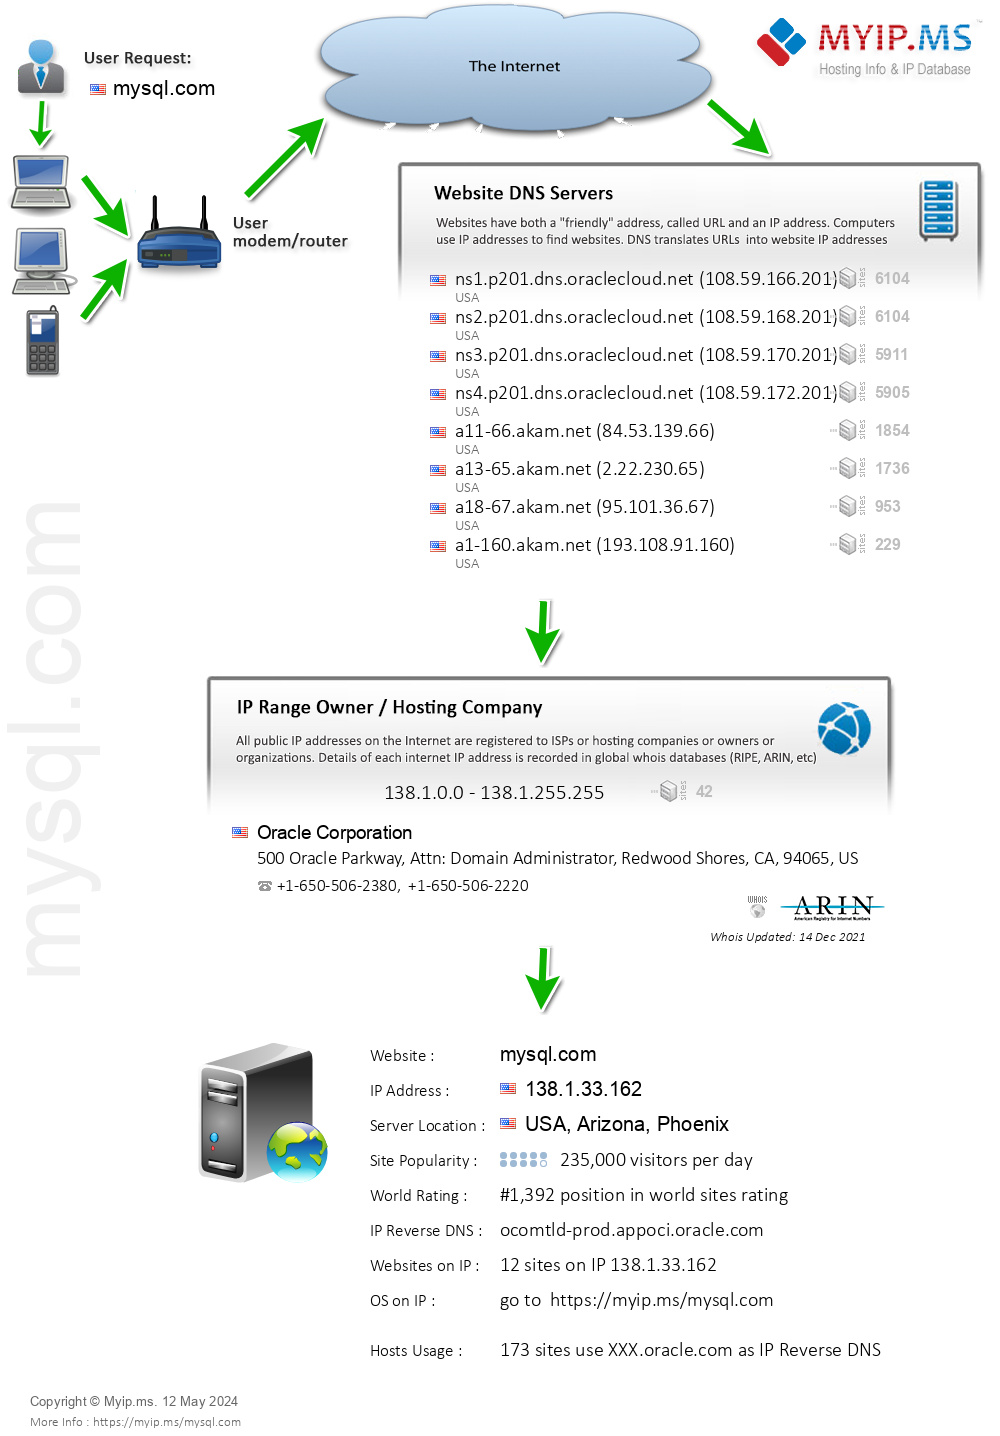 Mysql.com - Website Hosting Visual IP Diagram